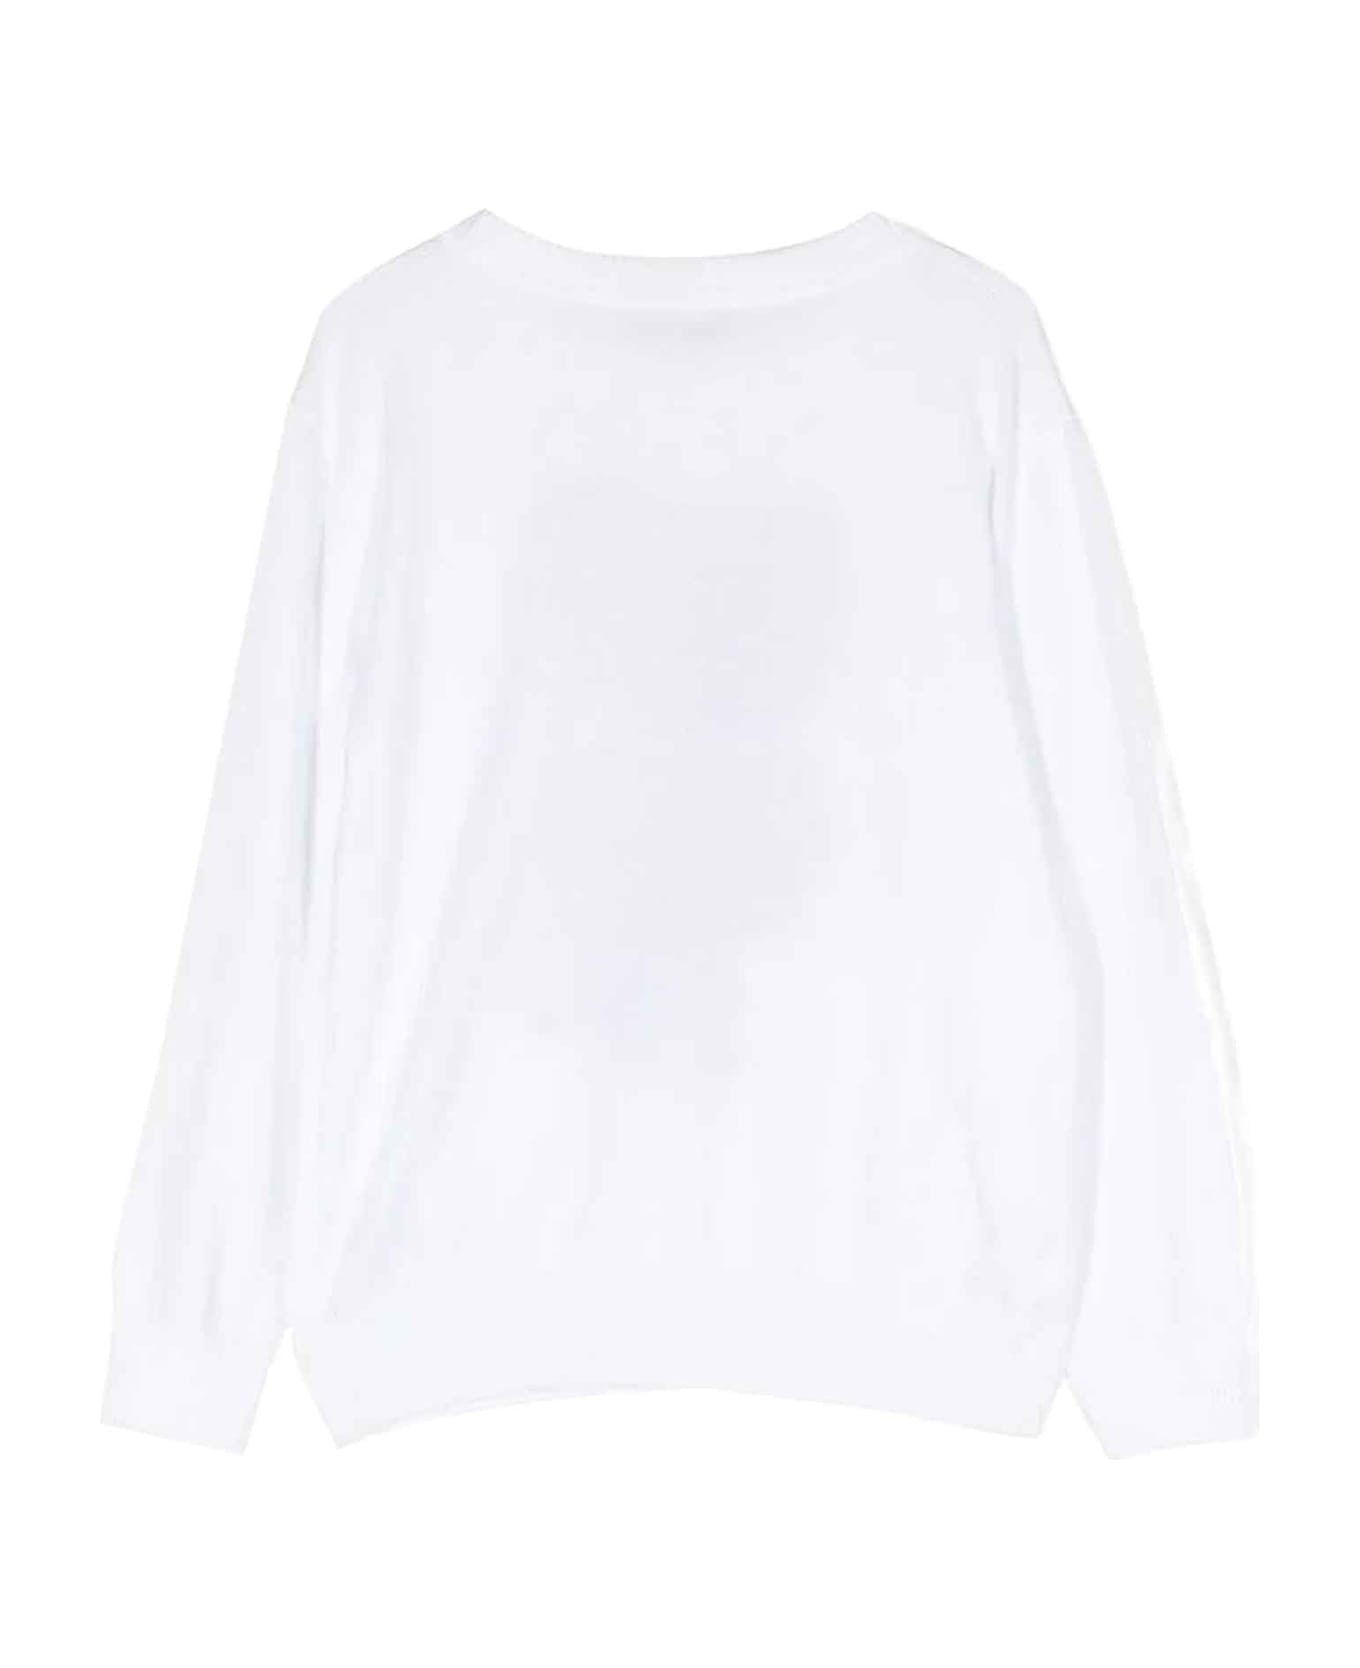 Moschino White Sweater Unisex - Bianco